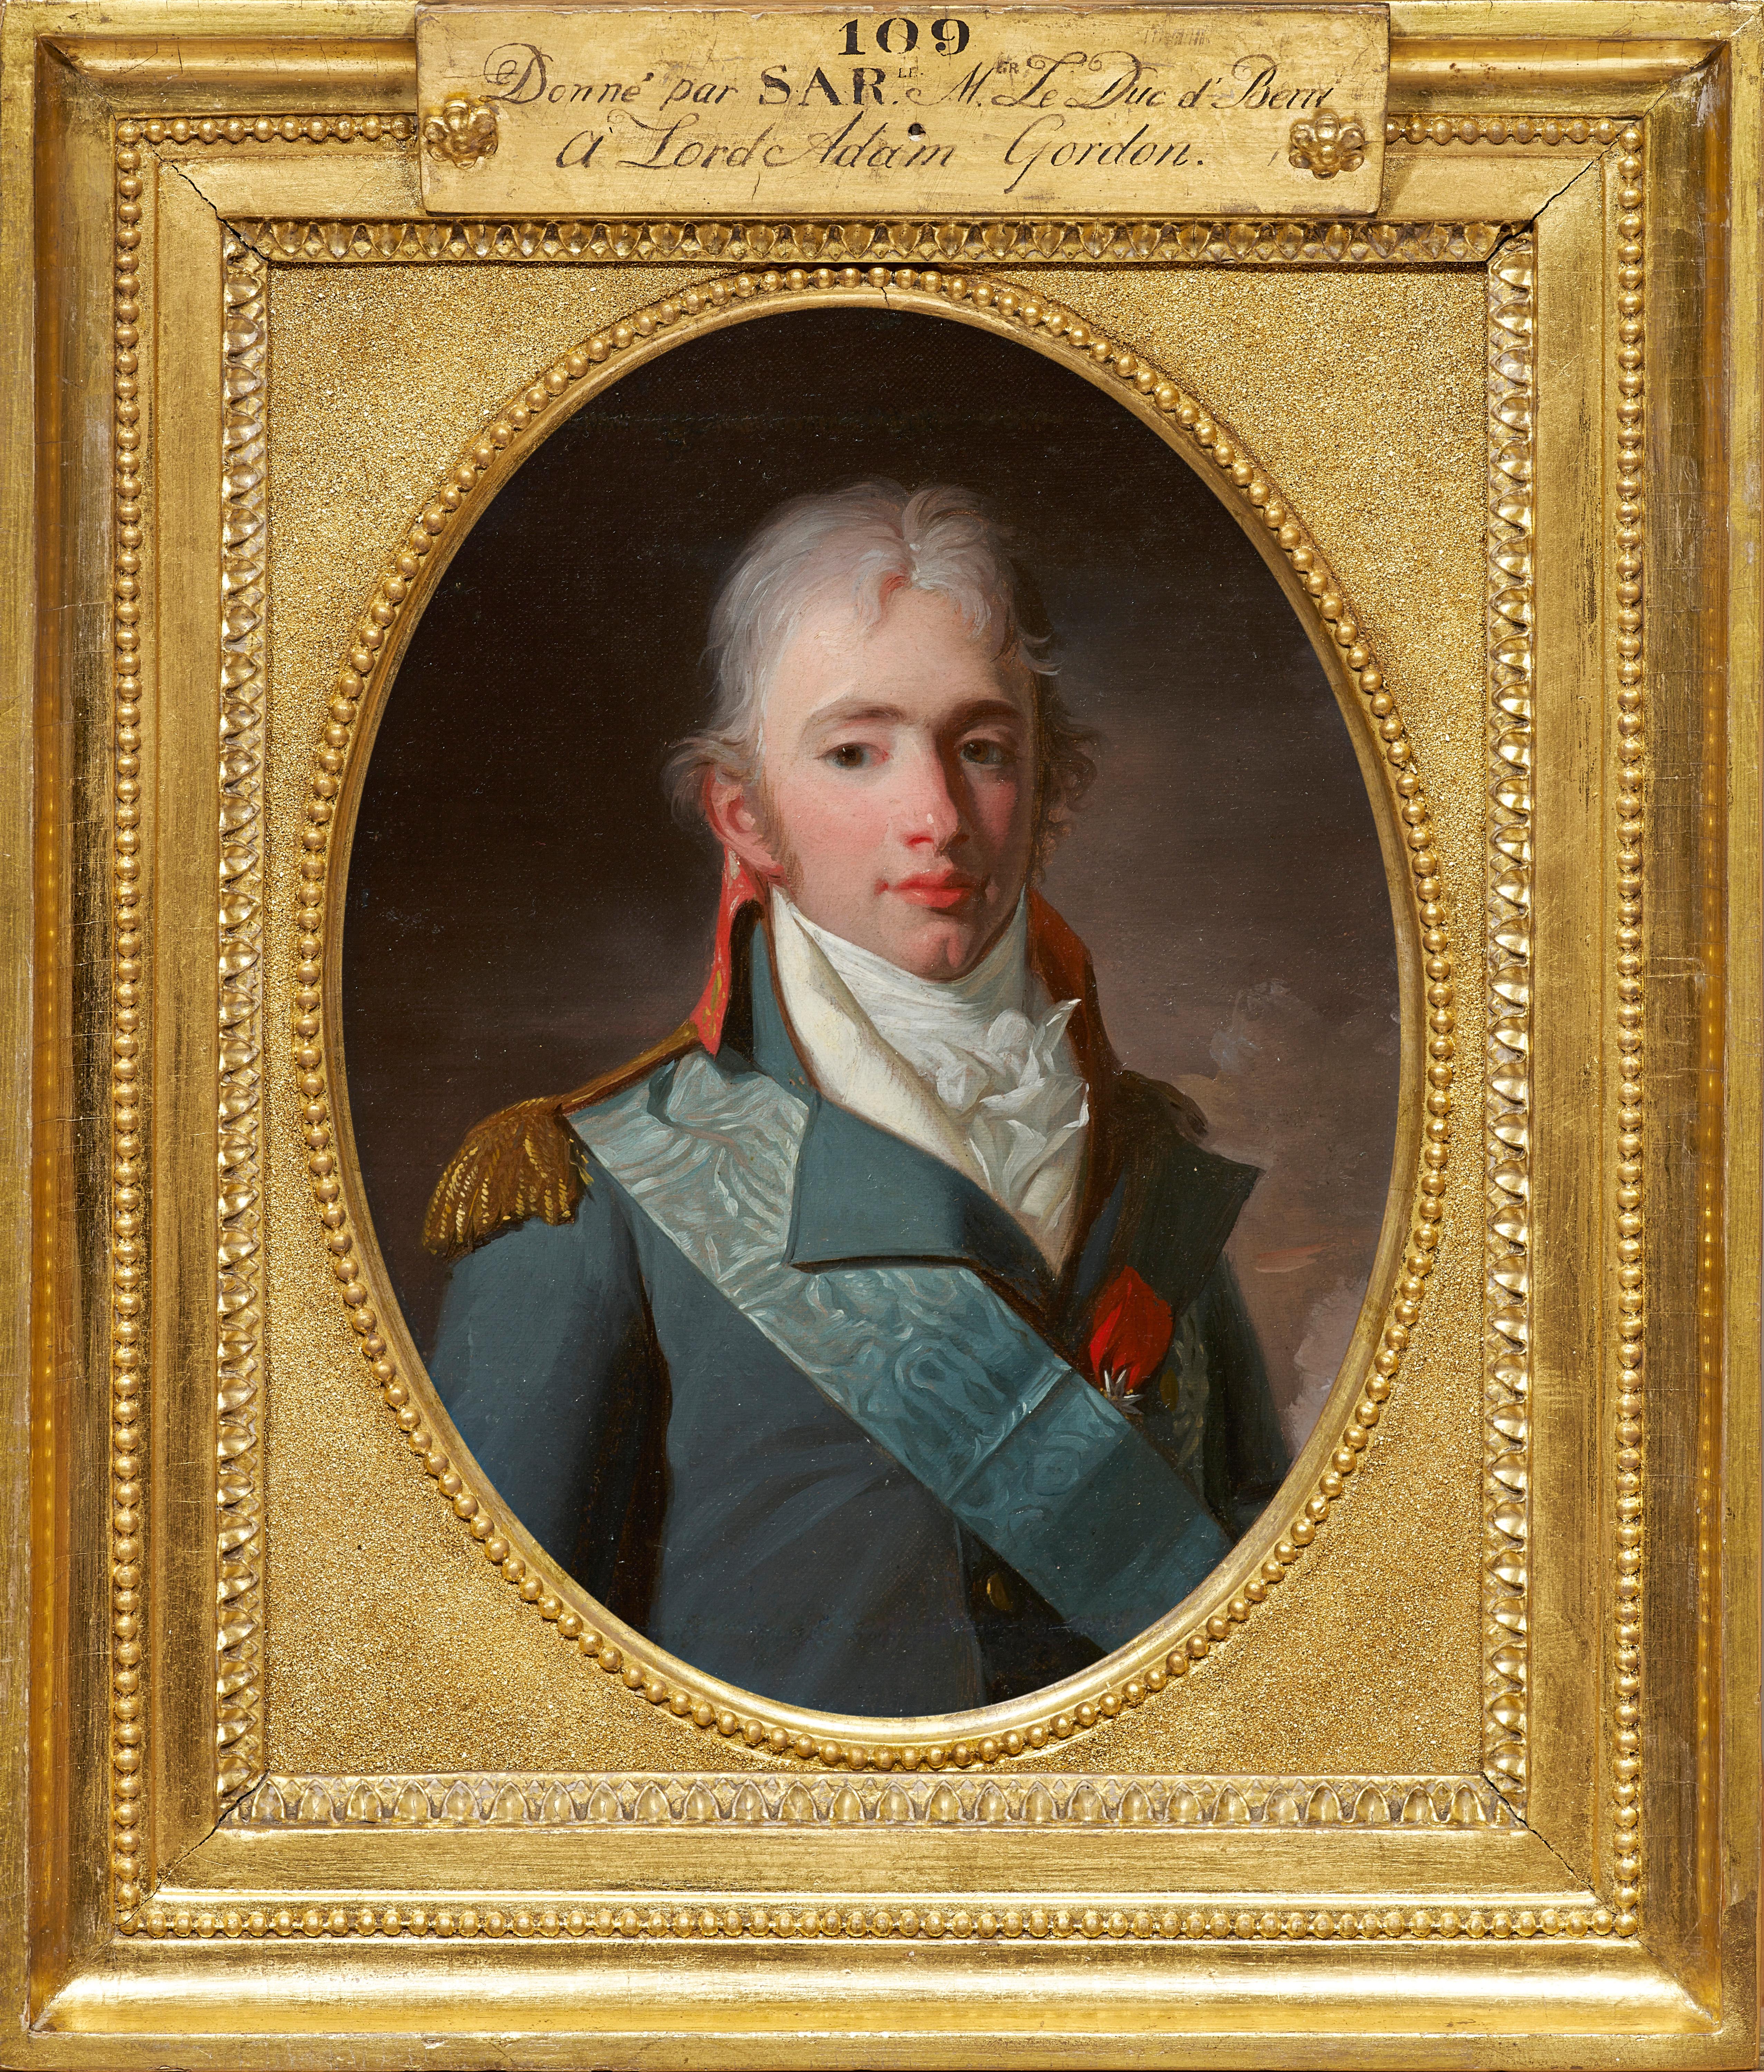 Zwei königliche Porträts (der Duc d'Angoulême und der Duc de Berry) von H.P. Danloux – Painting von Henri-Pierre Danloux